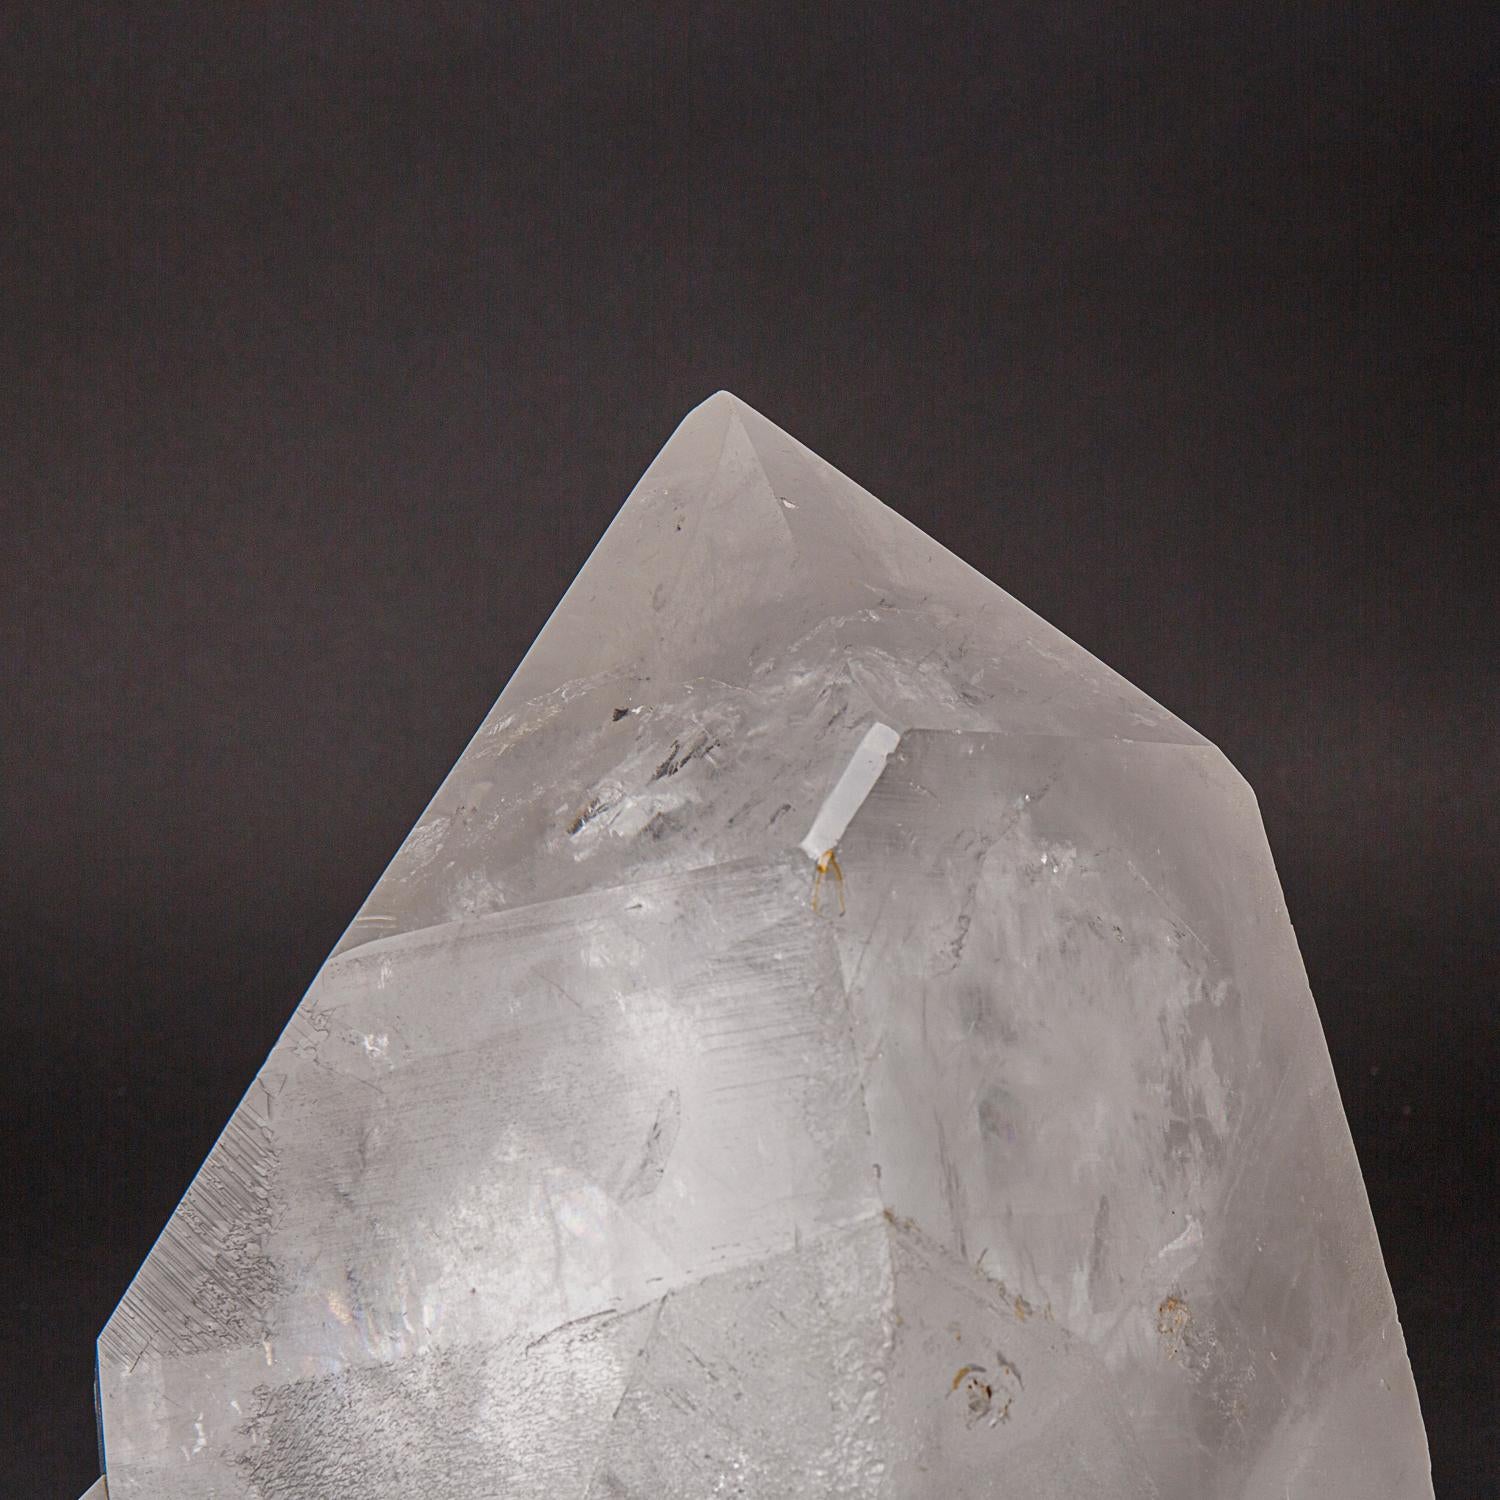 Dieser echte klare Quarzkristall Cluster Point aus Brasilien wiegt 61,5 Pfund und ist aus hochwertigen, durchsichtigen Quarzkristallen gefertigt. Mit einem vollständigen Abschluss und einer glänzenden, reflektierenden Oberfläche eignet sich dieser